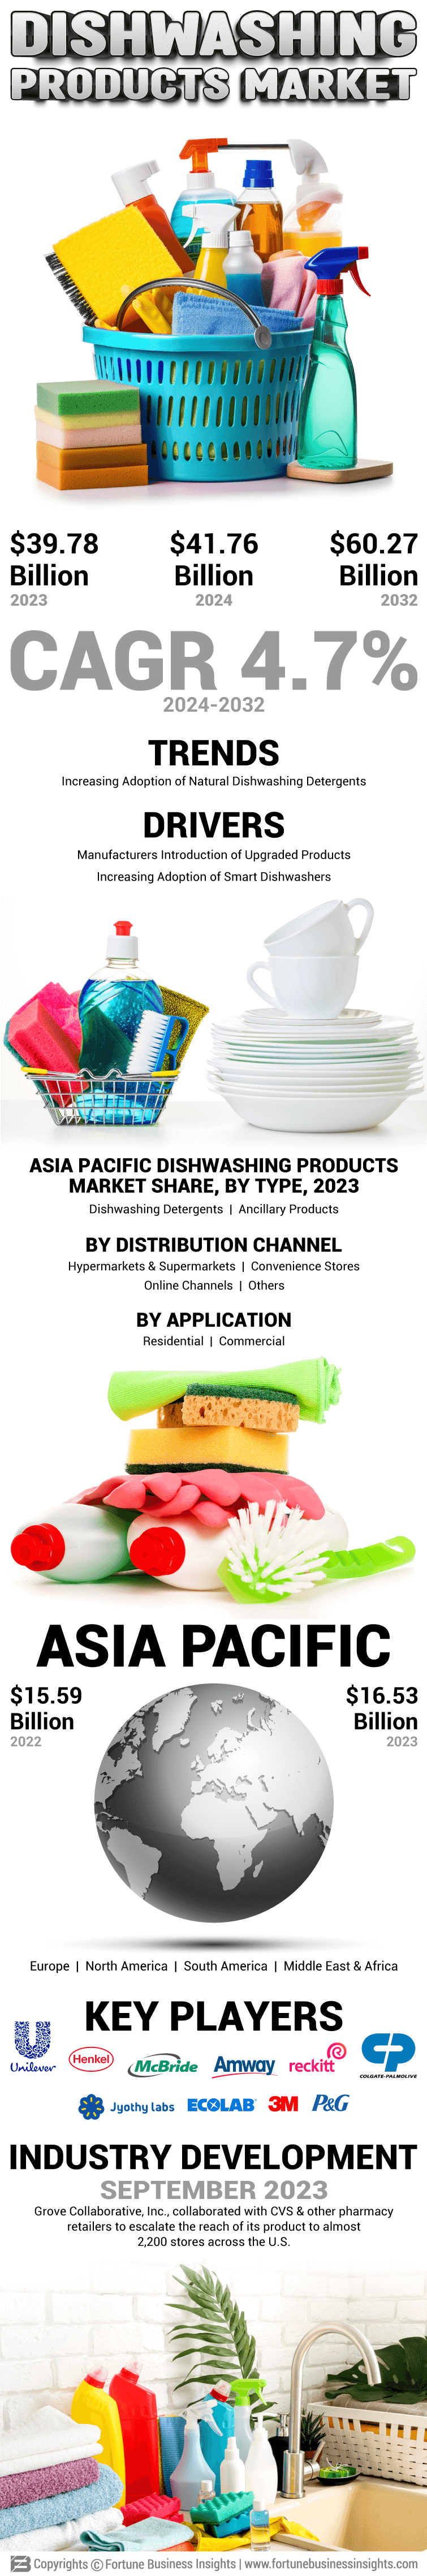 Dishwashing Products Market